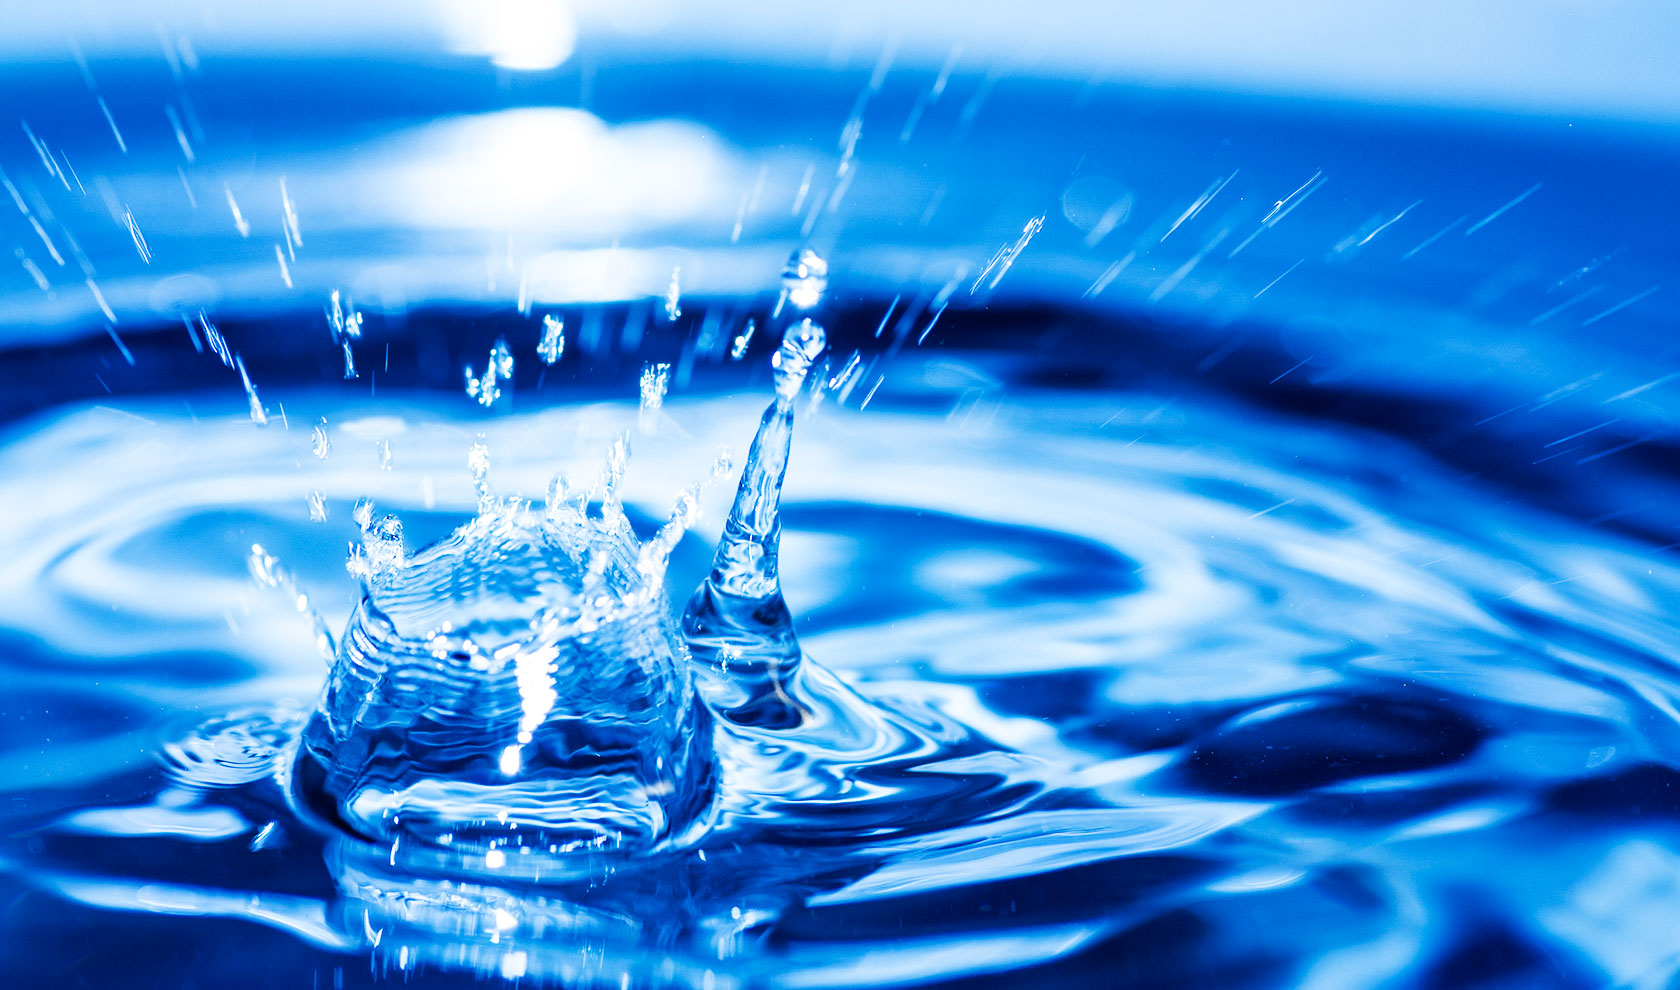 Wassertropfen Wasserhydraulik Frnakonia-Hydraulik, blau, Wasserspritzer, Wasseroberfläche